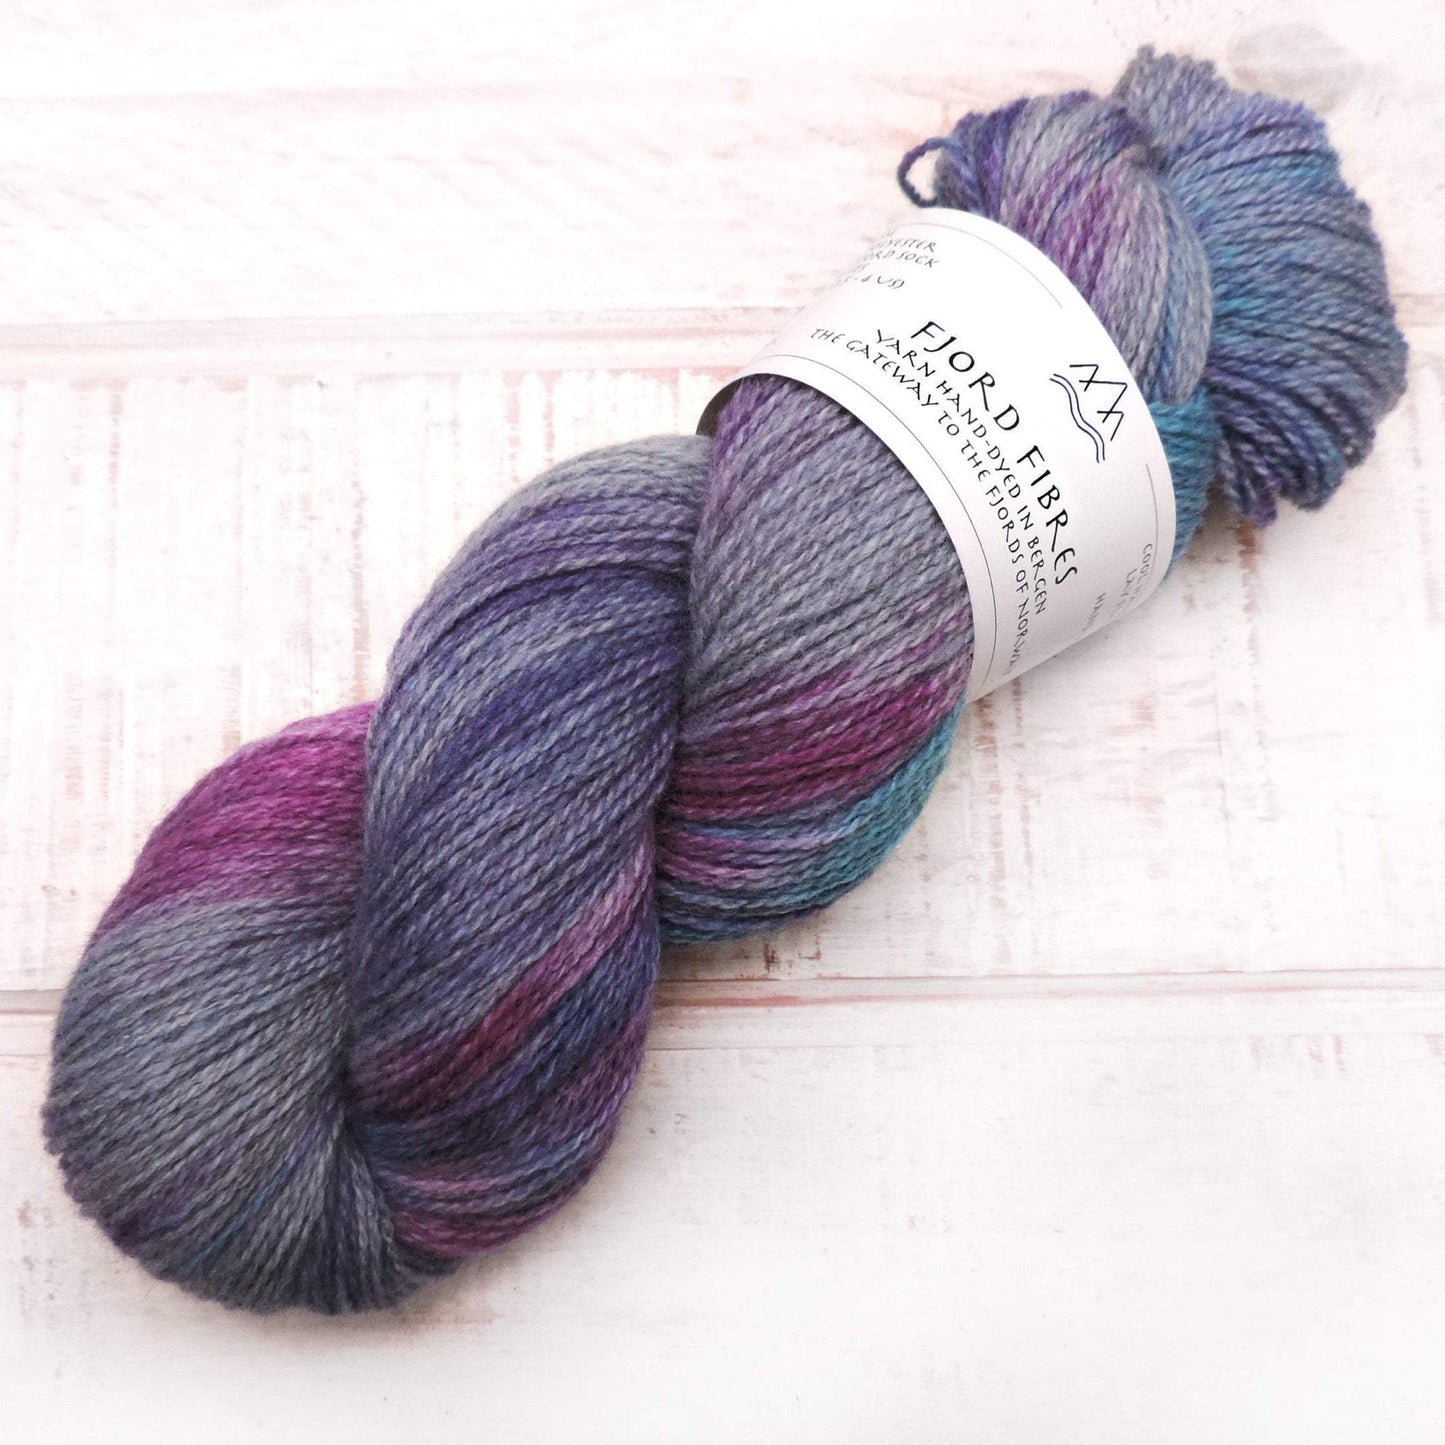 Cosmic Gradient Set - Trollfjord Sock - Variegated Yarn - Hand dyed yarn